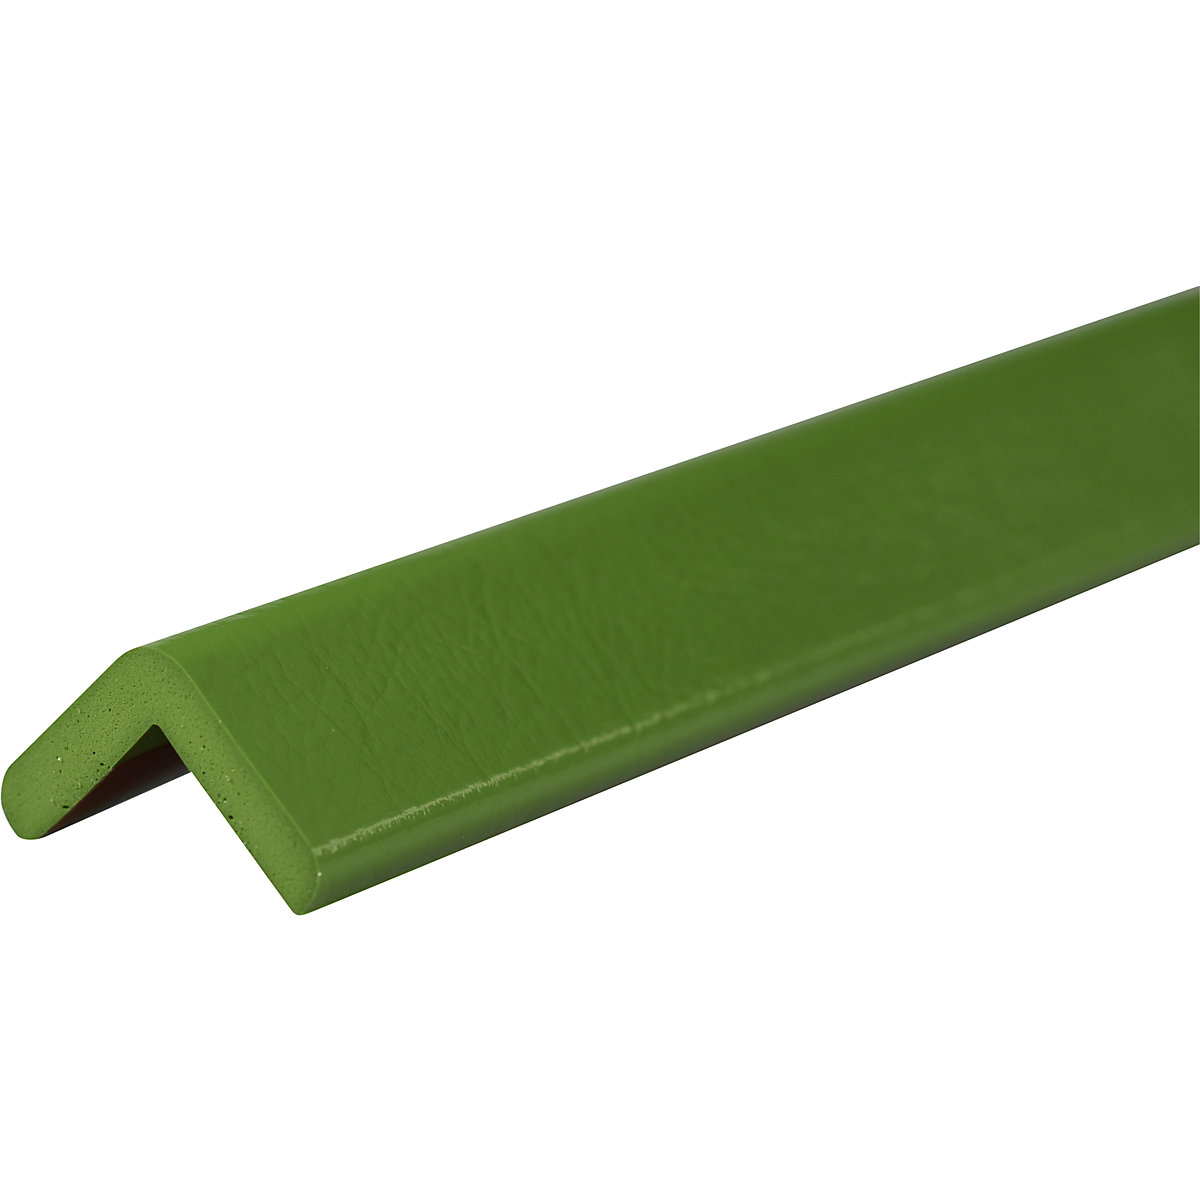 Protección de esquinas Knuffi® – SHG, tipo H, pieza de 1 m, verde-19